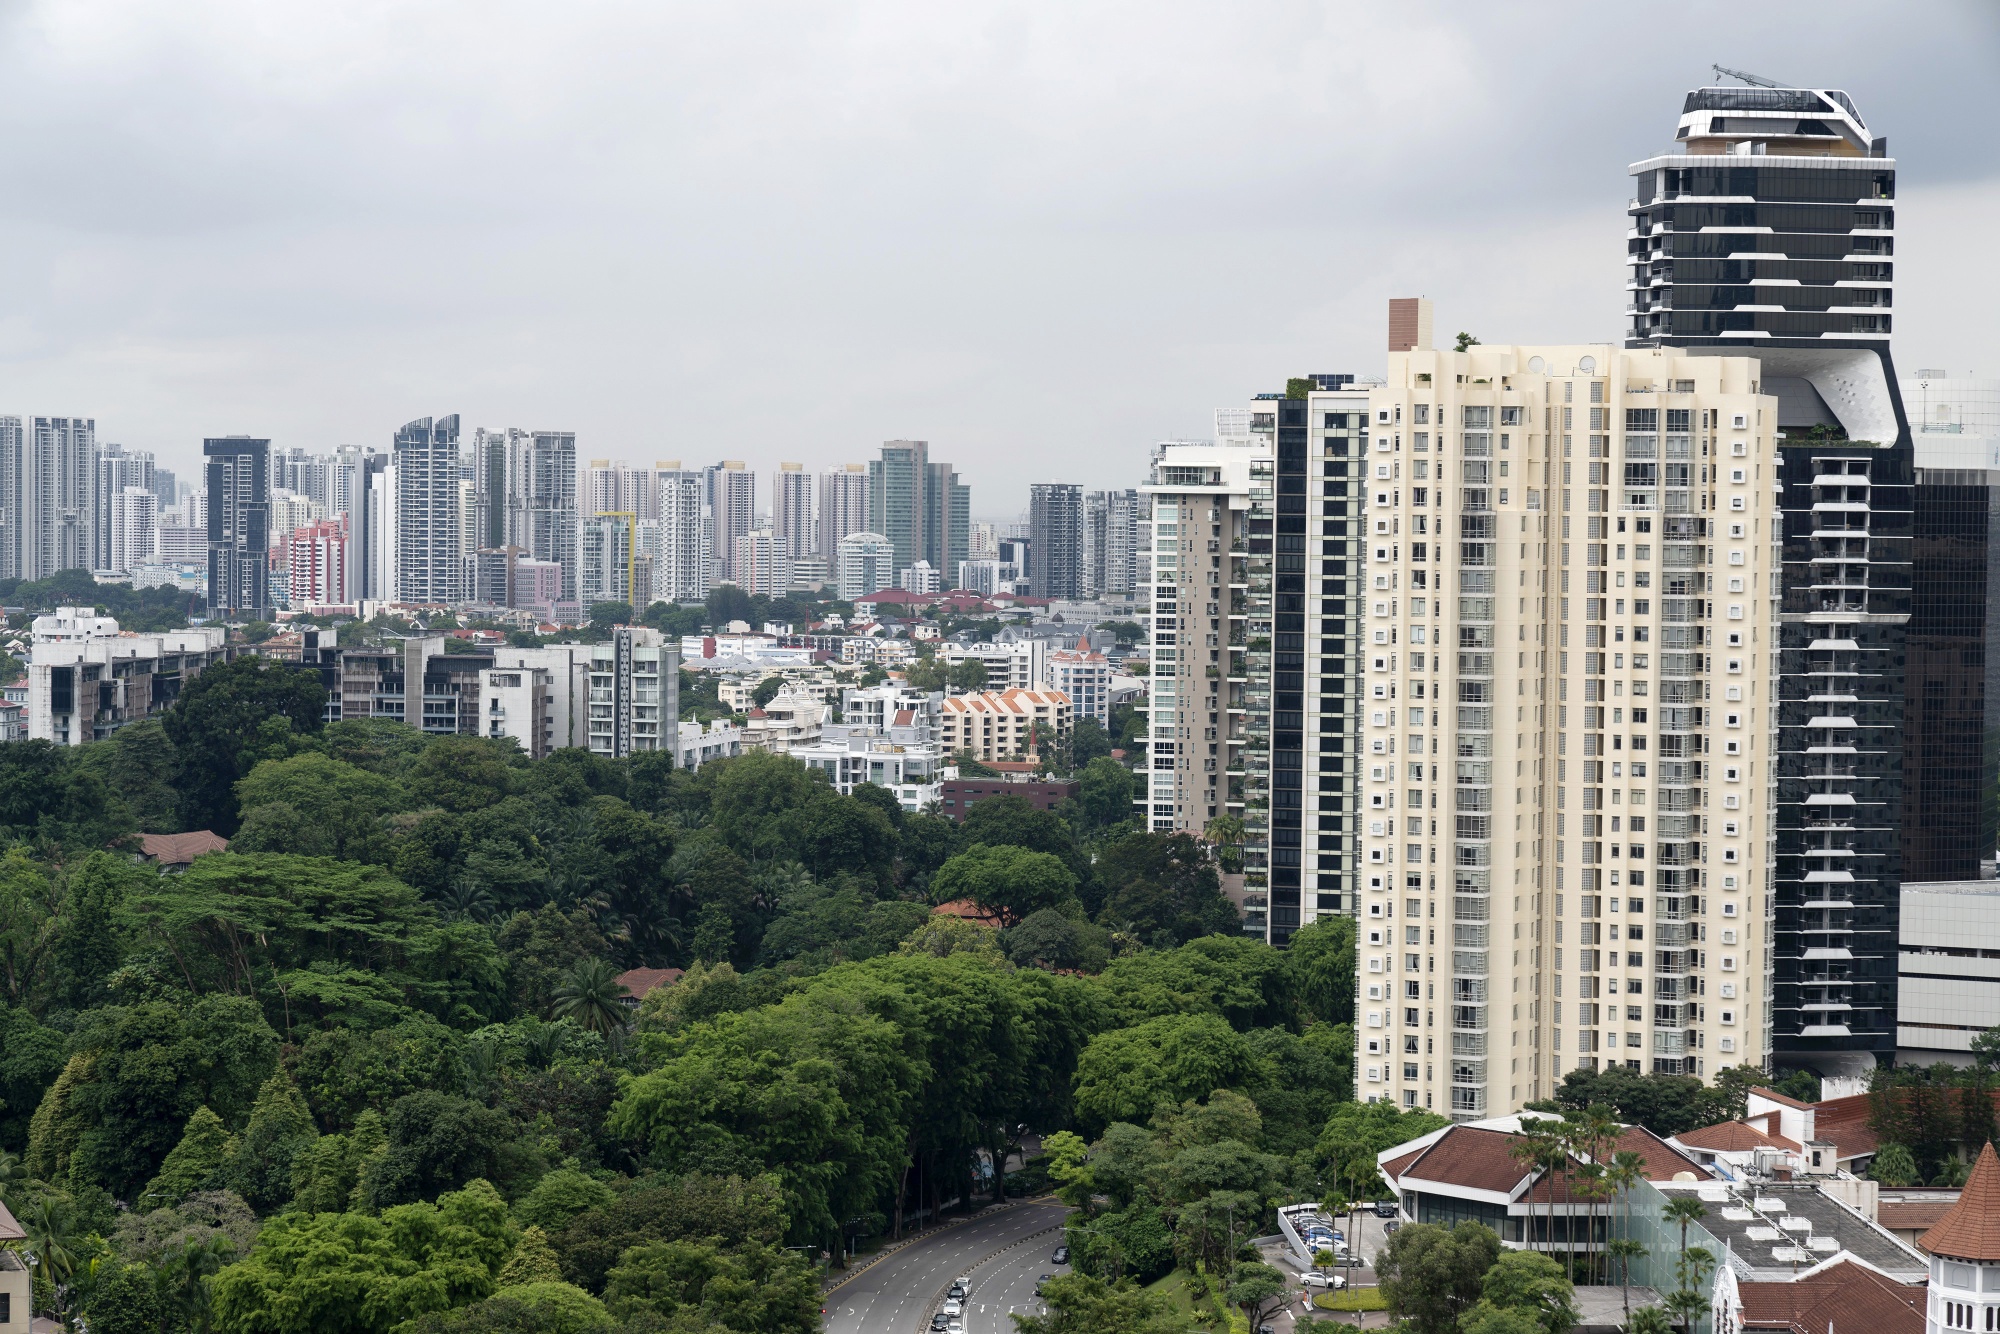 Condominiums&nbsp;in Singapore.